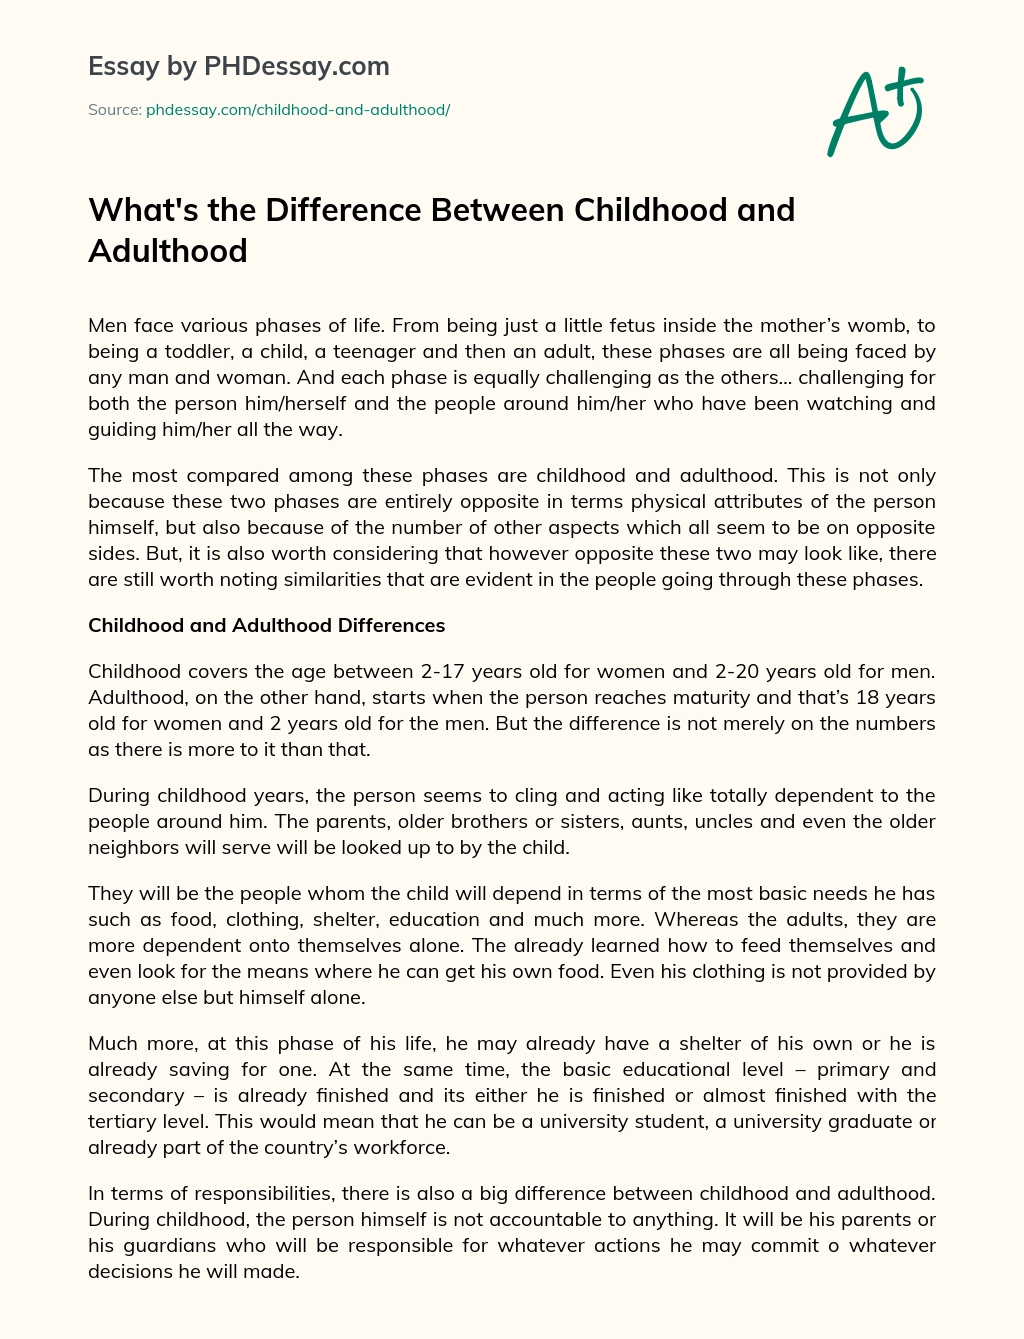 mi a különbség a gyermekkori és a felnőttkori esszé között